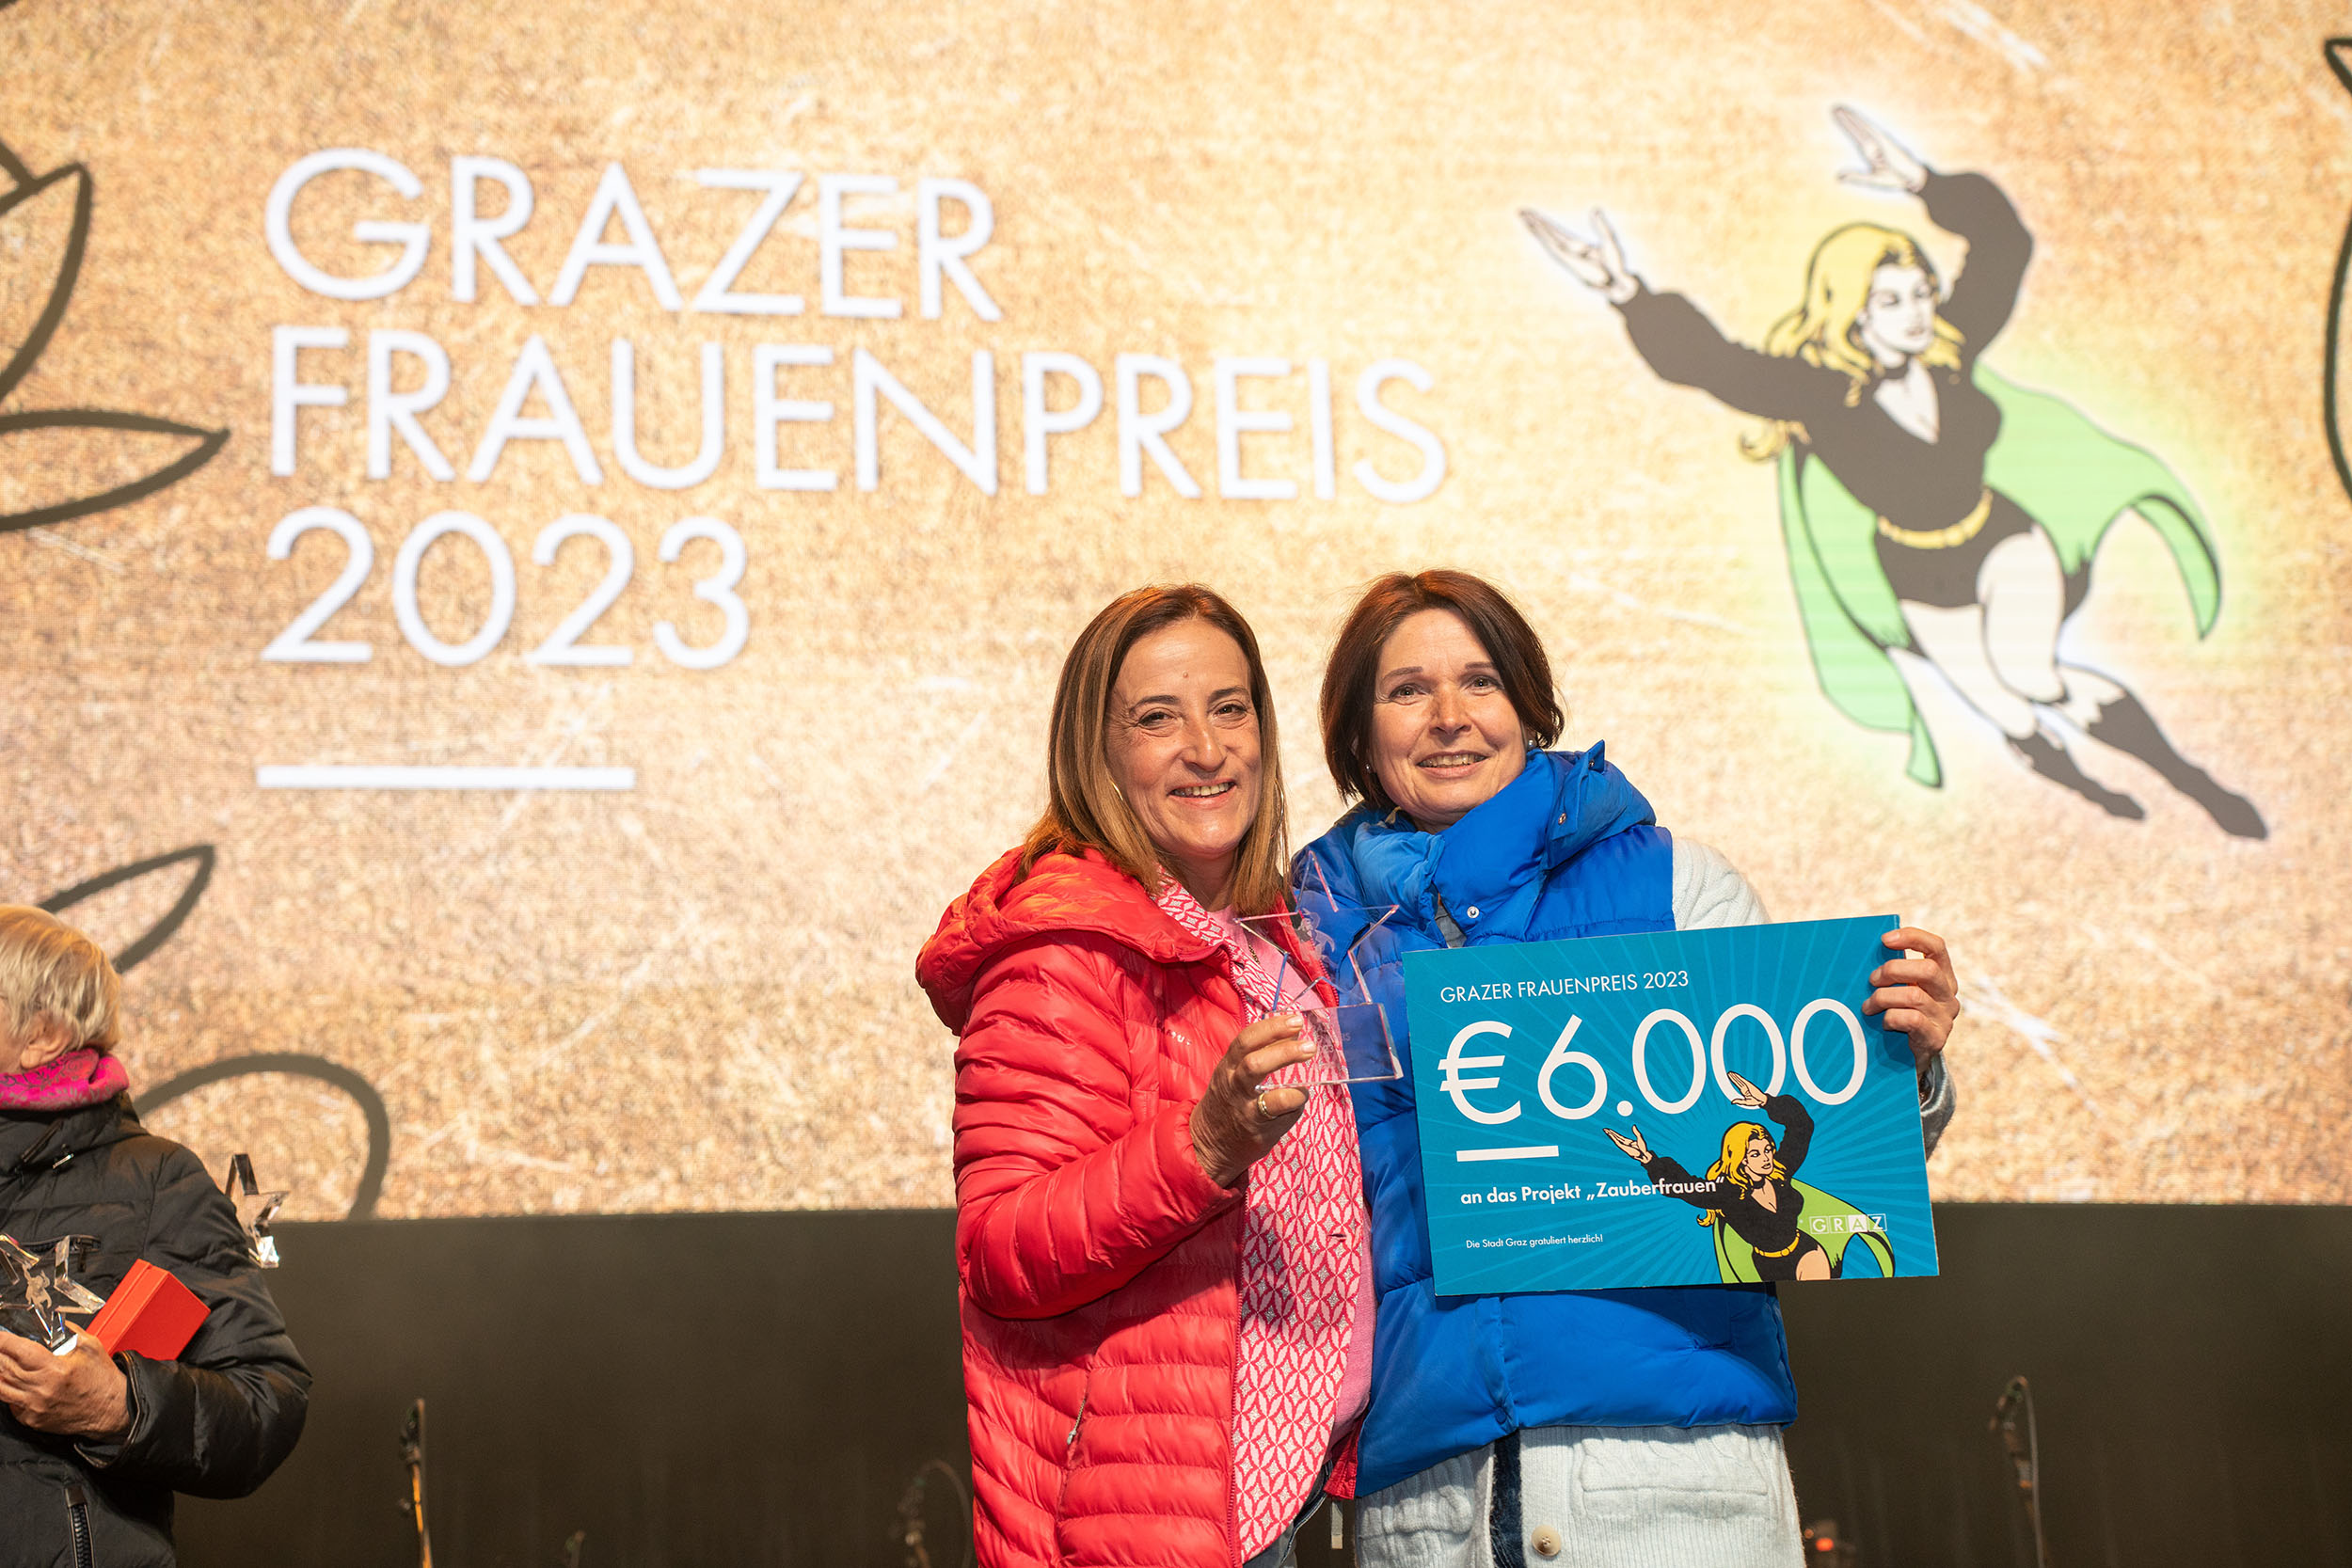 Der Grazer Frauenpreis 2023 wurde für das Projekt "Zauberfrauen" vergeben. (v.l.n.r.: Gudrun Schinagl, Claudia Petru)